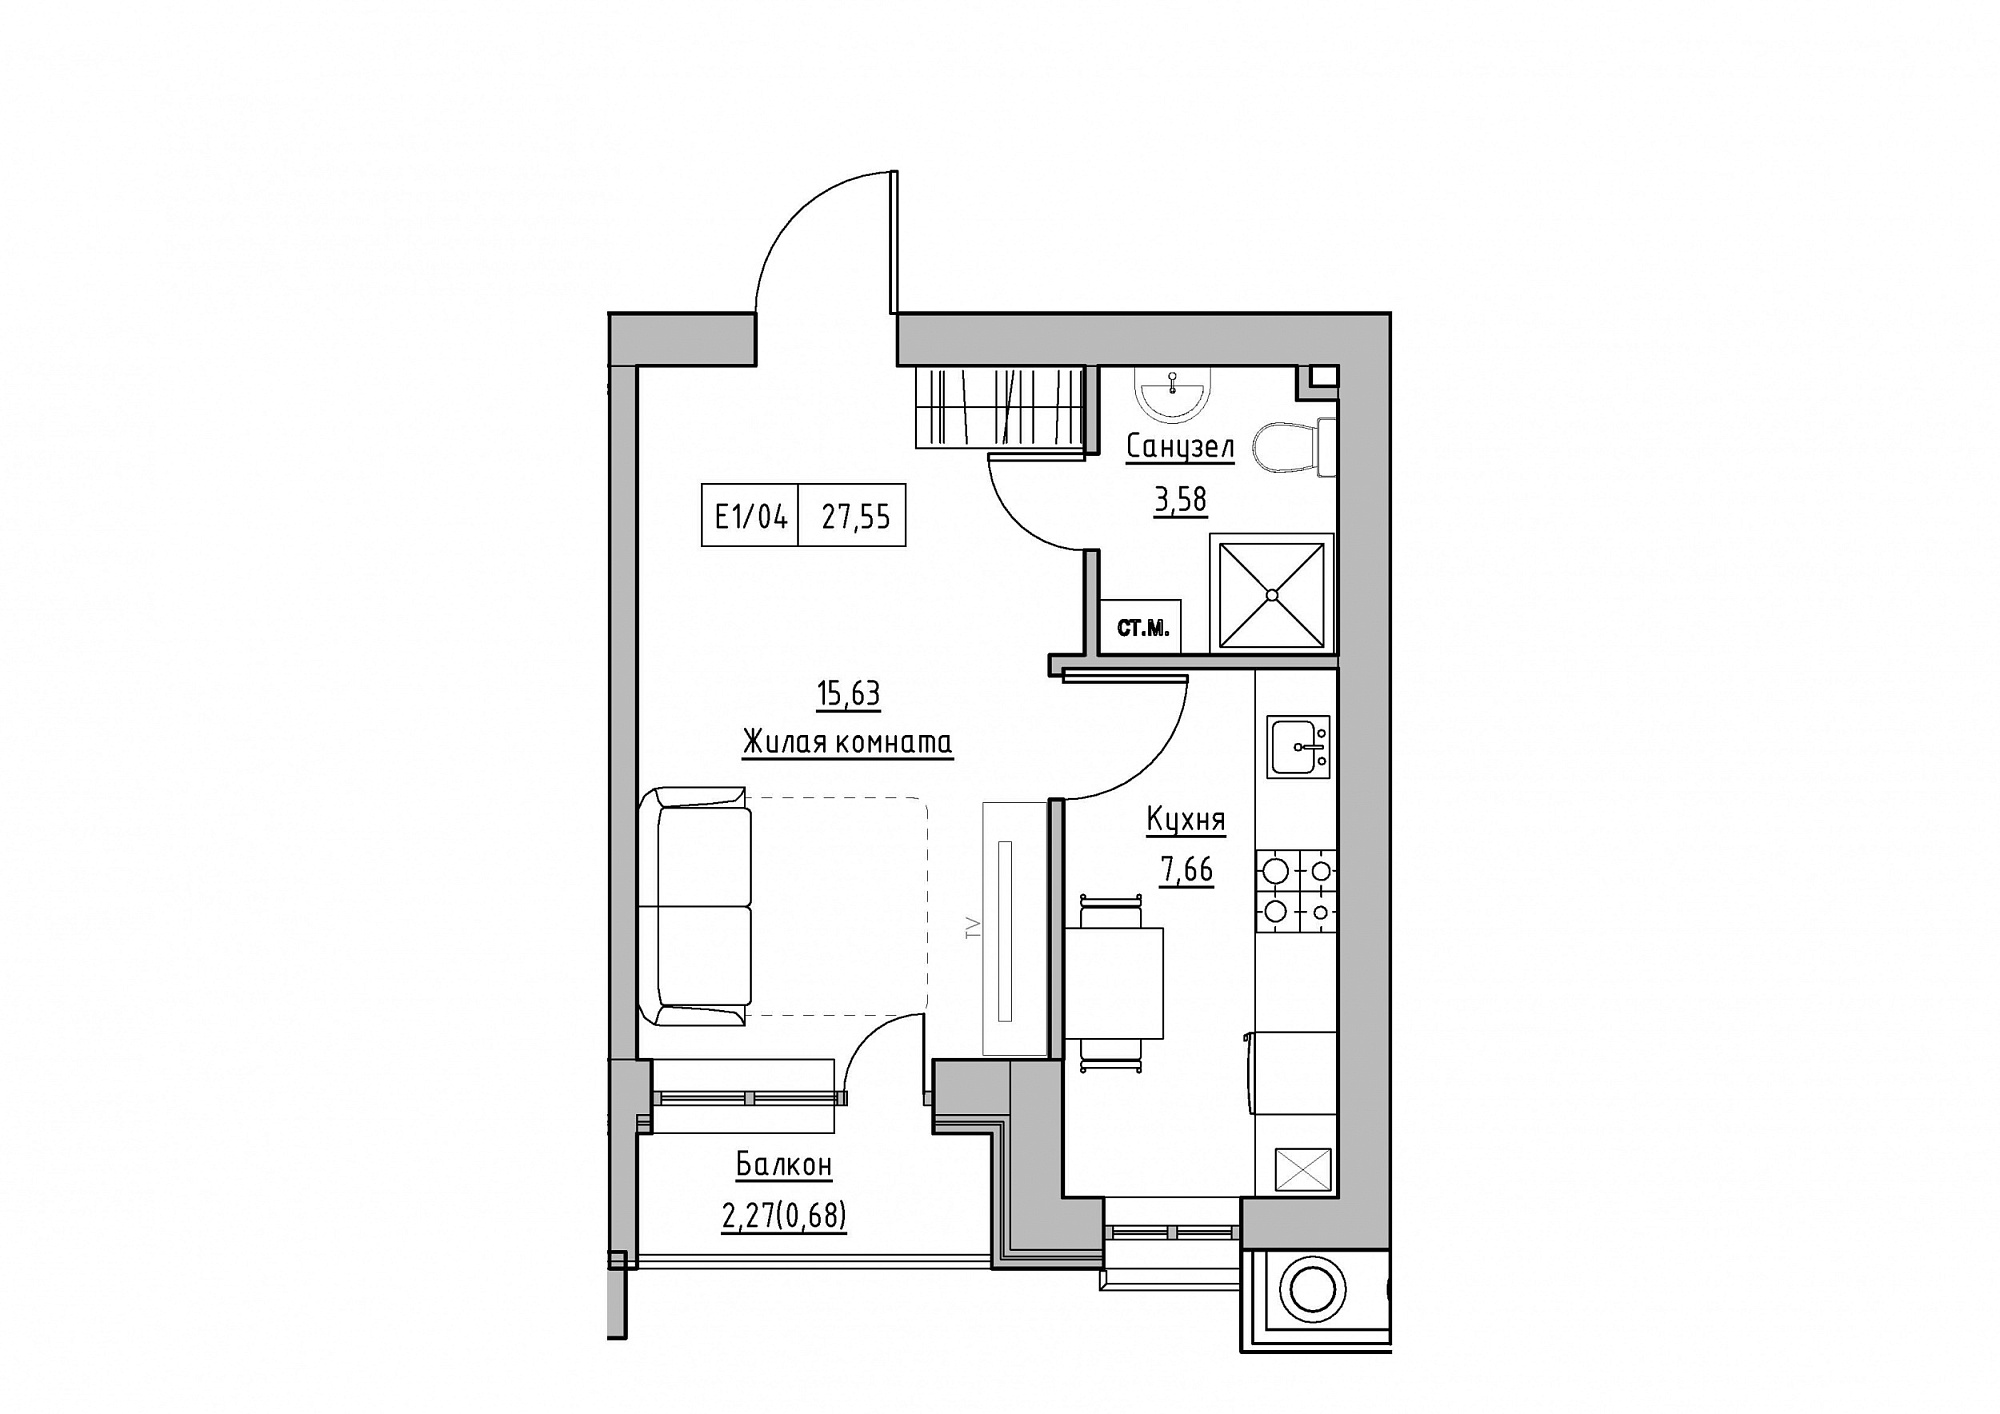 Планировка 1-к квартира площей 27.55м2, KS-012-05/0007.